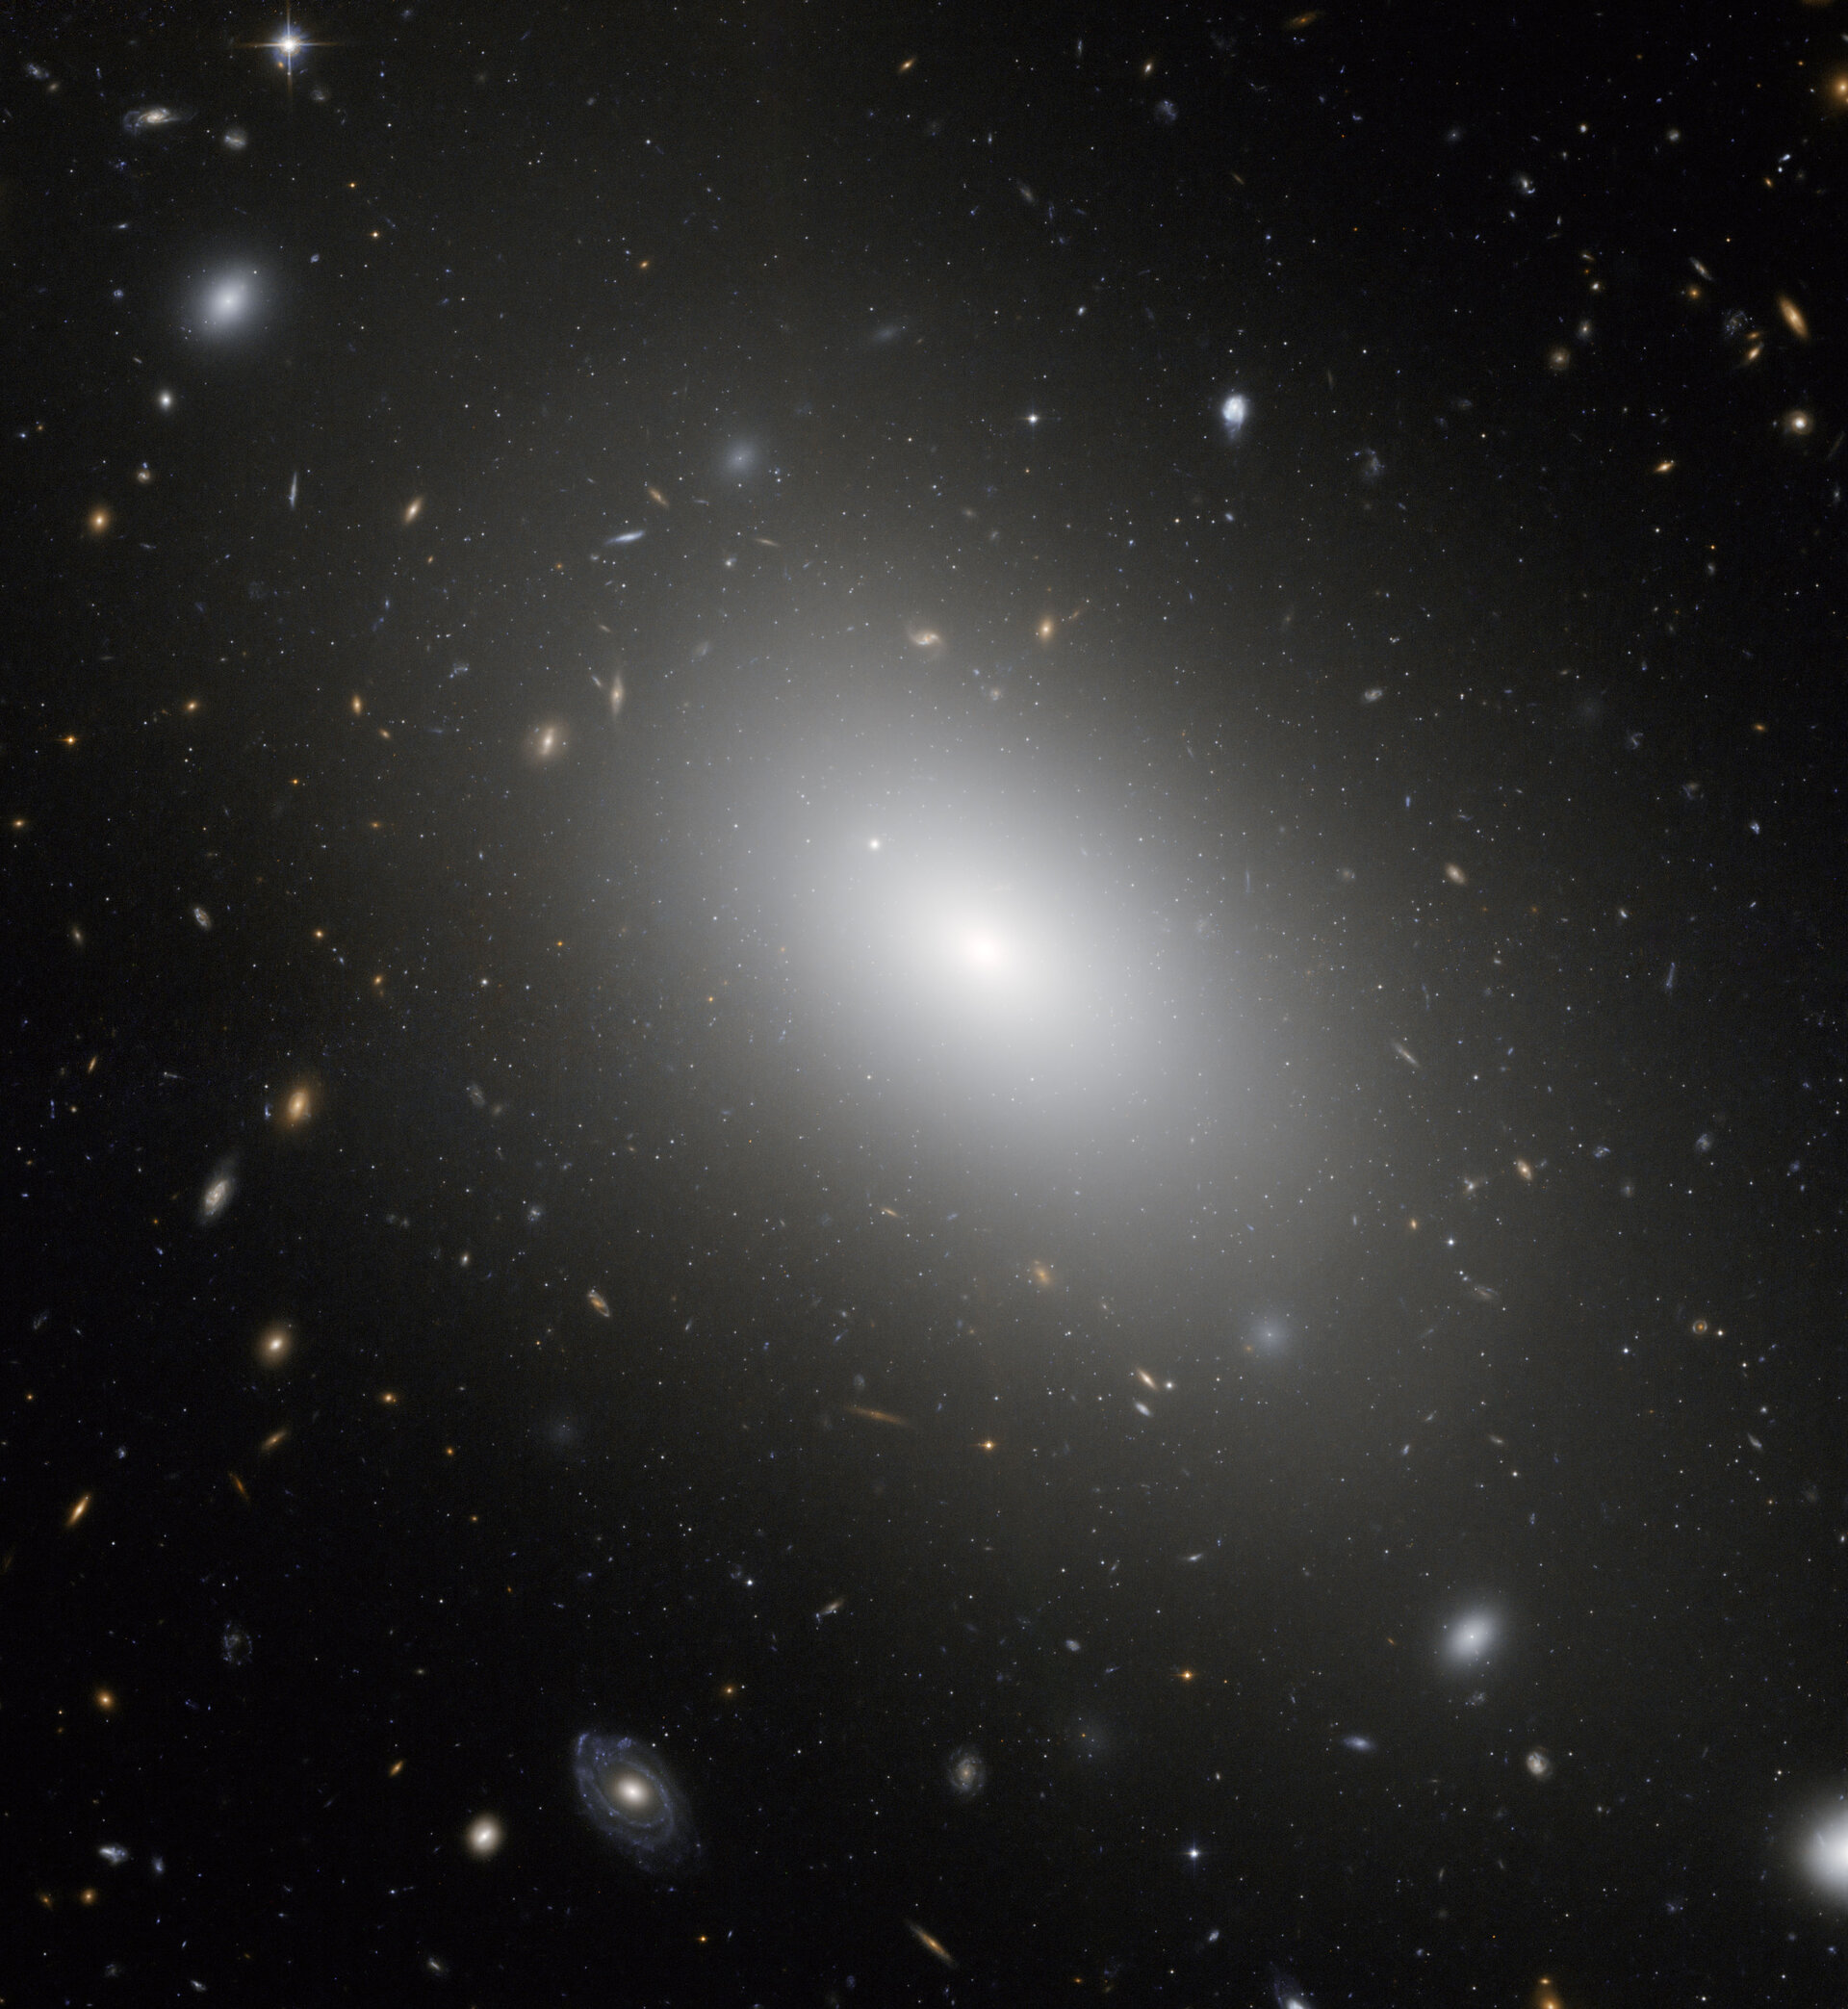 The gargantuan galaxy NGC 1132